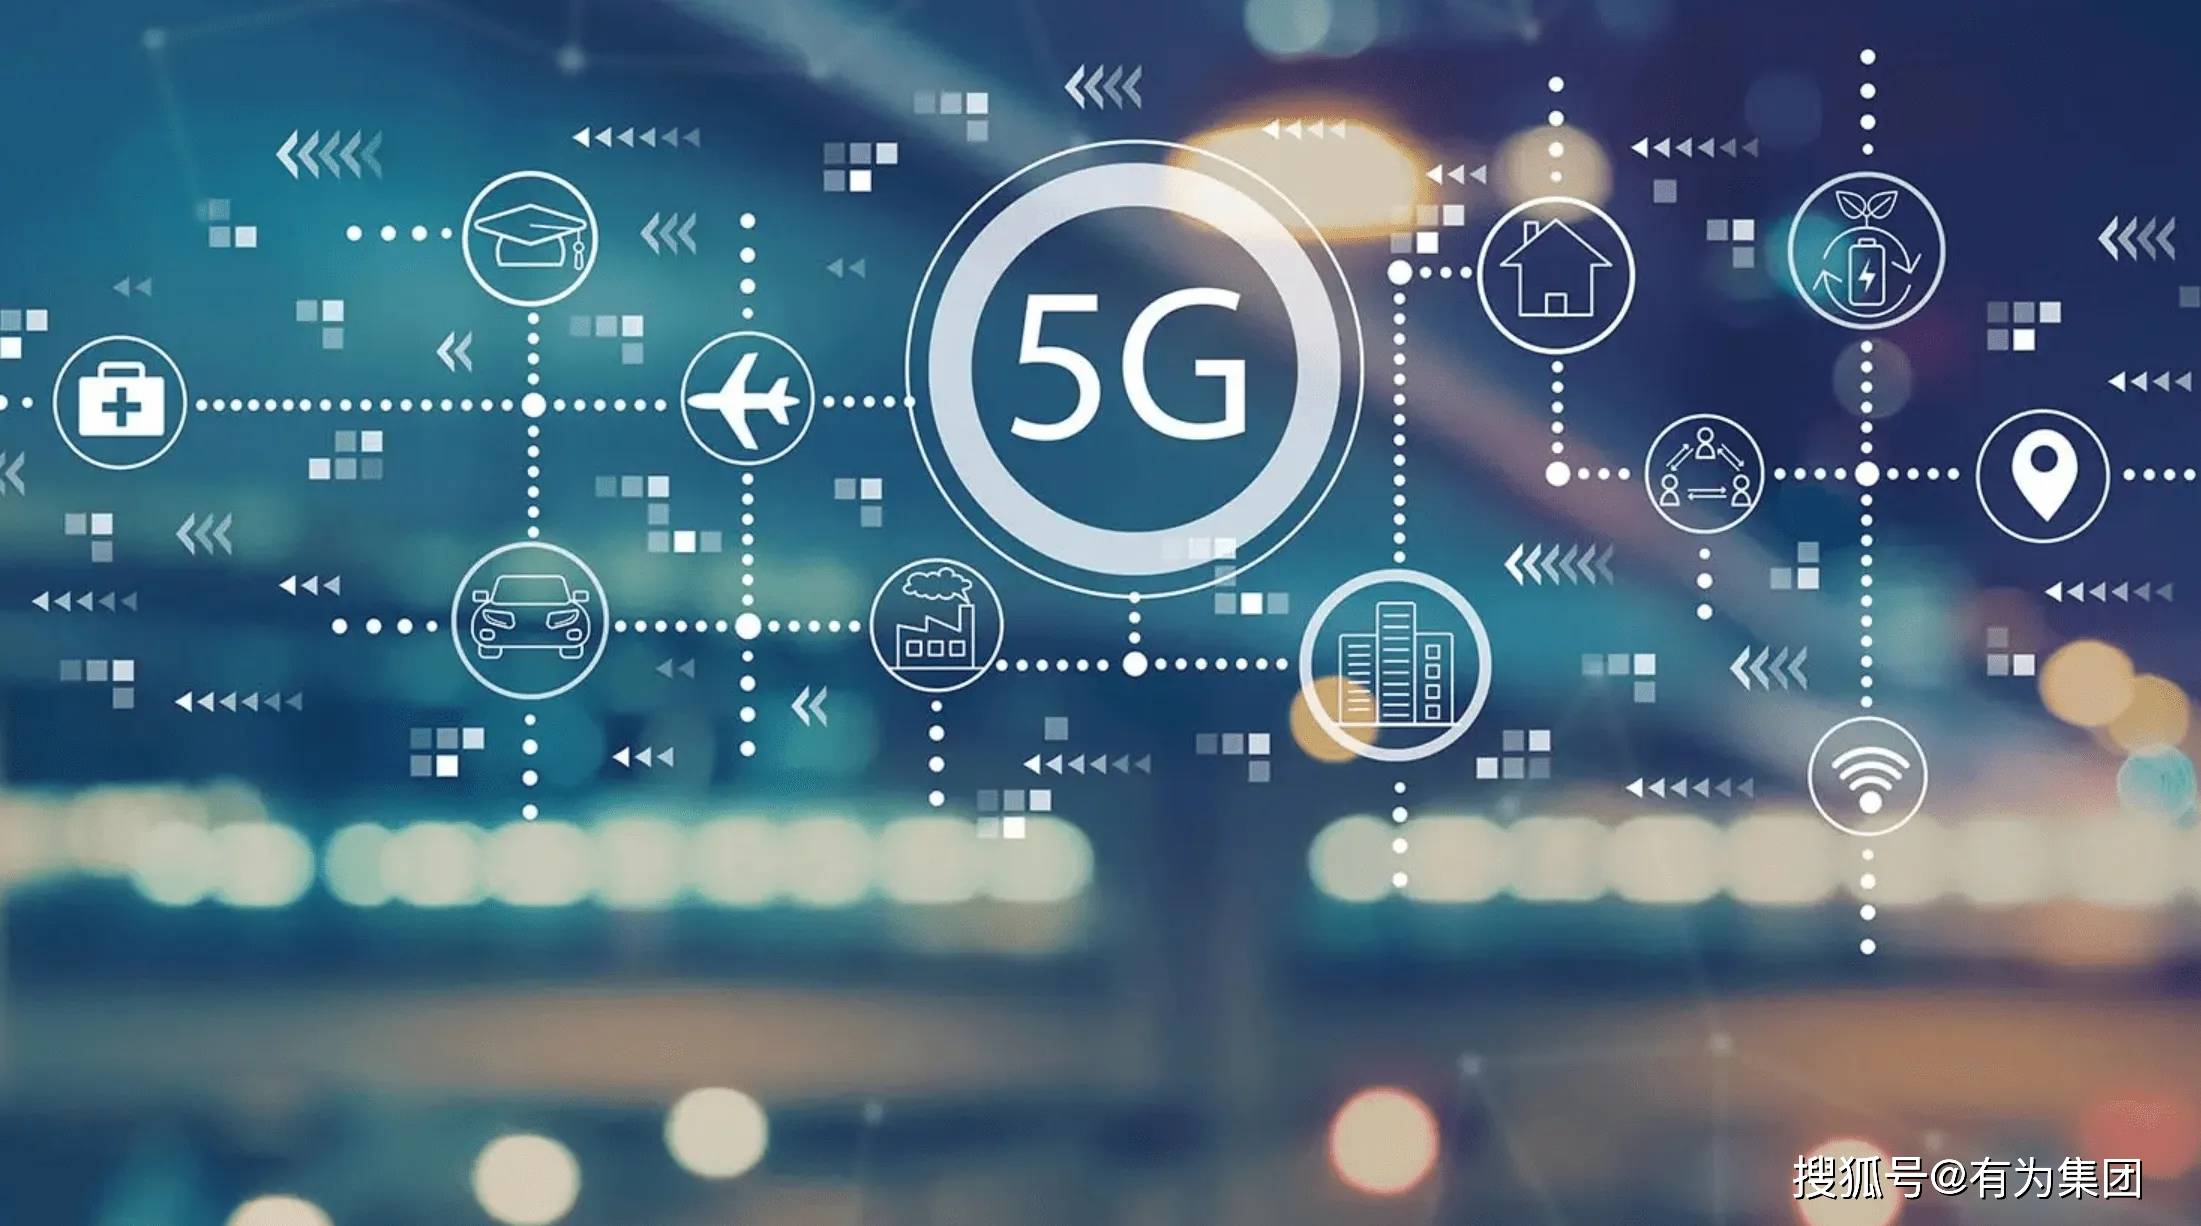 5G 技术引领未来智慧生活，5G 手机普及与专利争夺成焦点  第2张